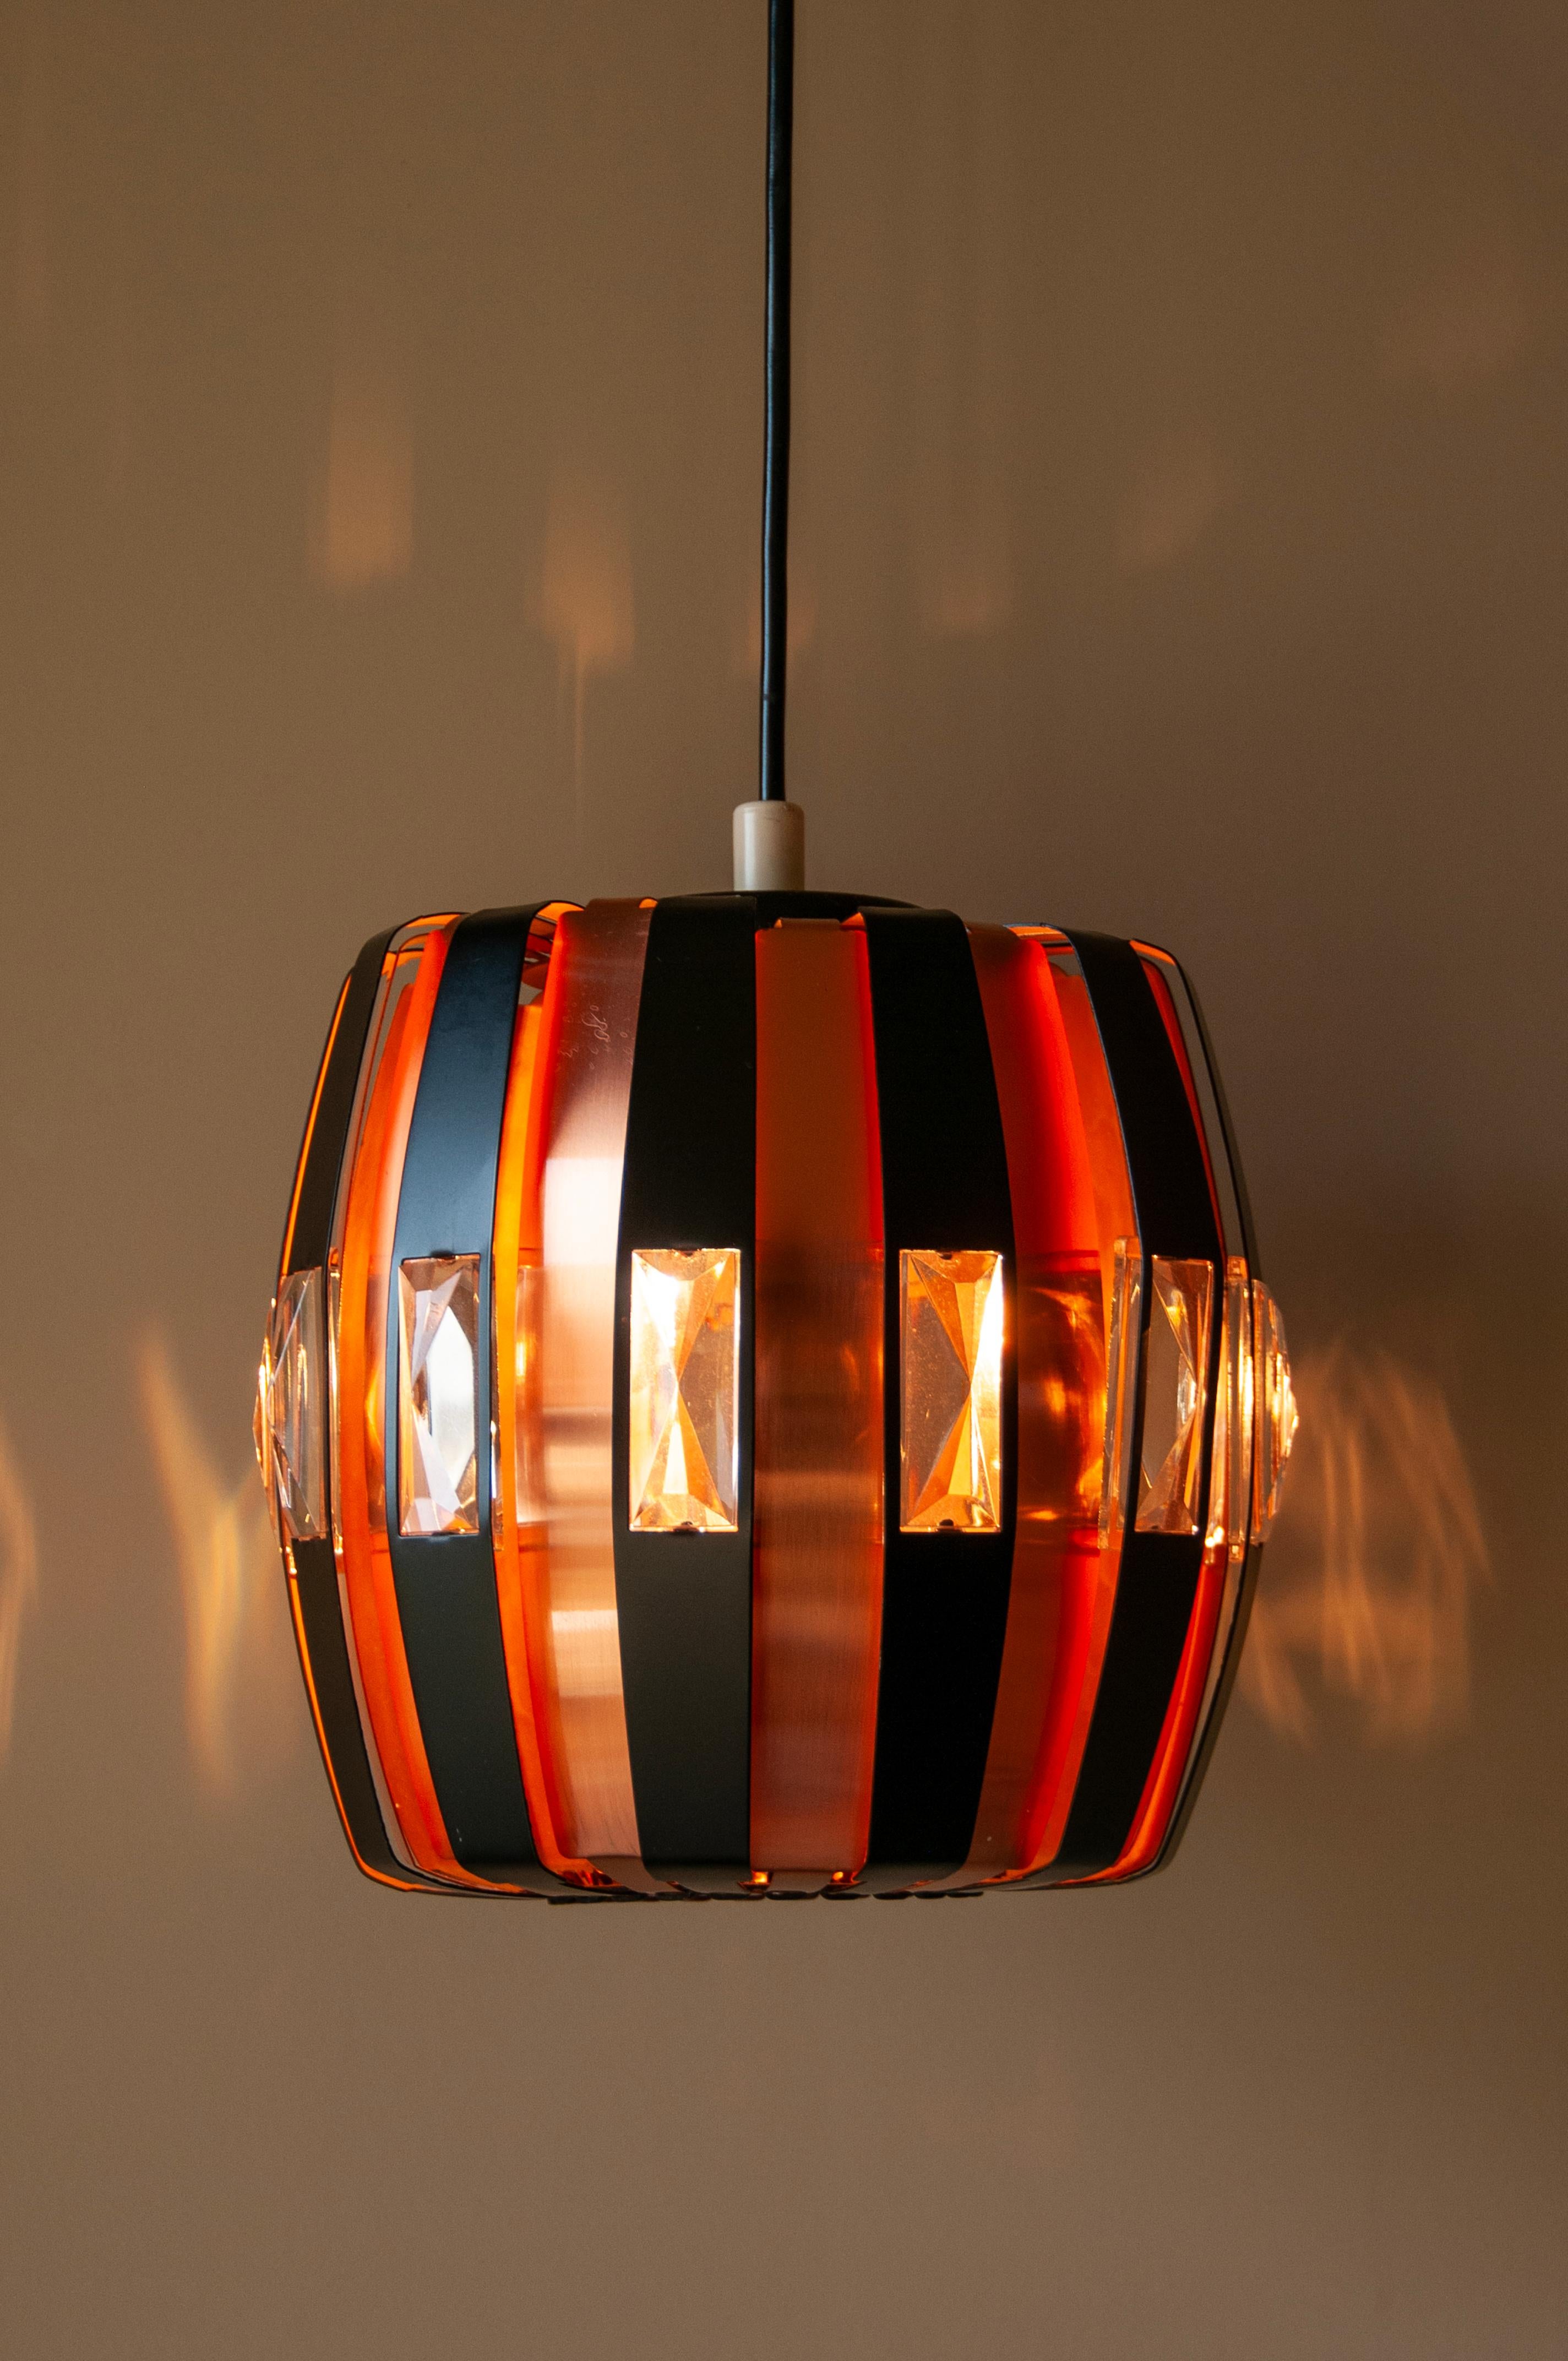 Élevez votre espace avec l'élégance intemporelle de la lampe à suspension L20 Coronell Elegro Copper, une quintessence du design Modern du milieu du siècle, créée par le visionnaire Werner Schou.

Fabrication exquise : Cette lampe suspendue L20 est